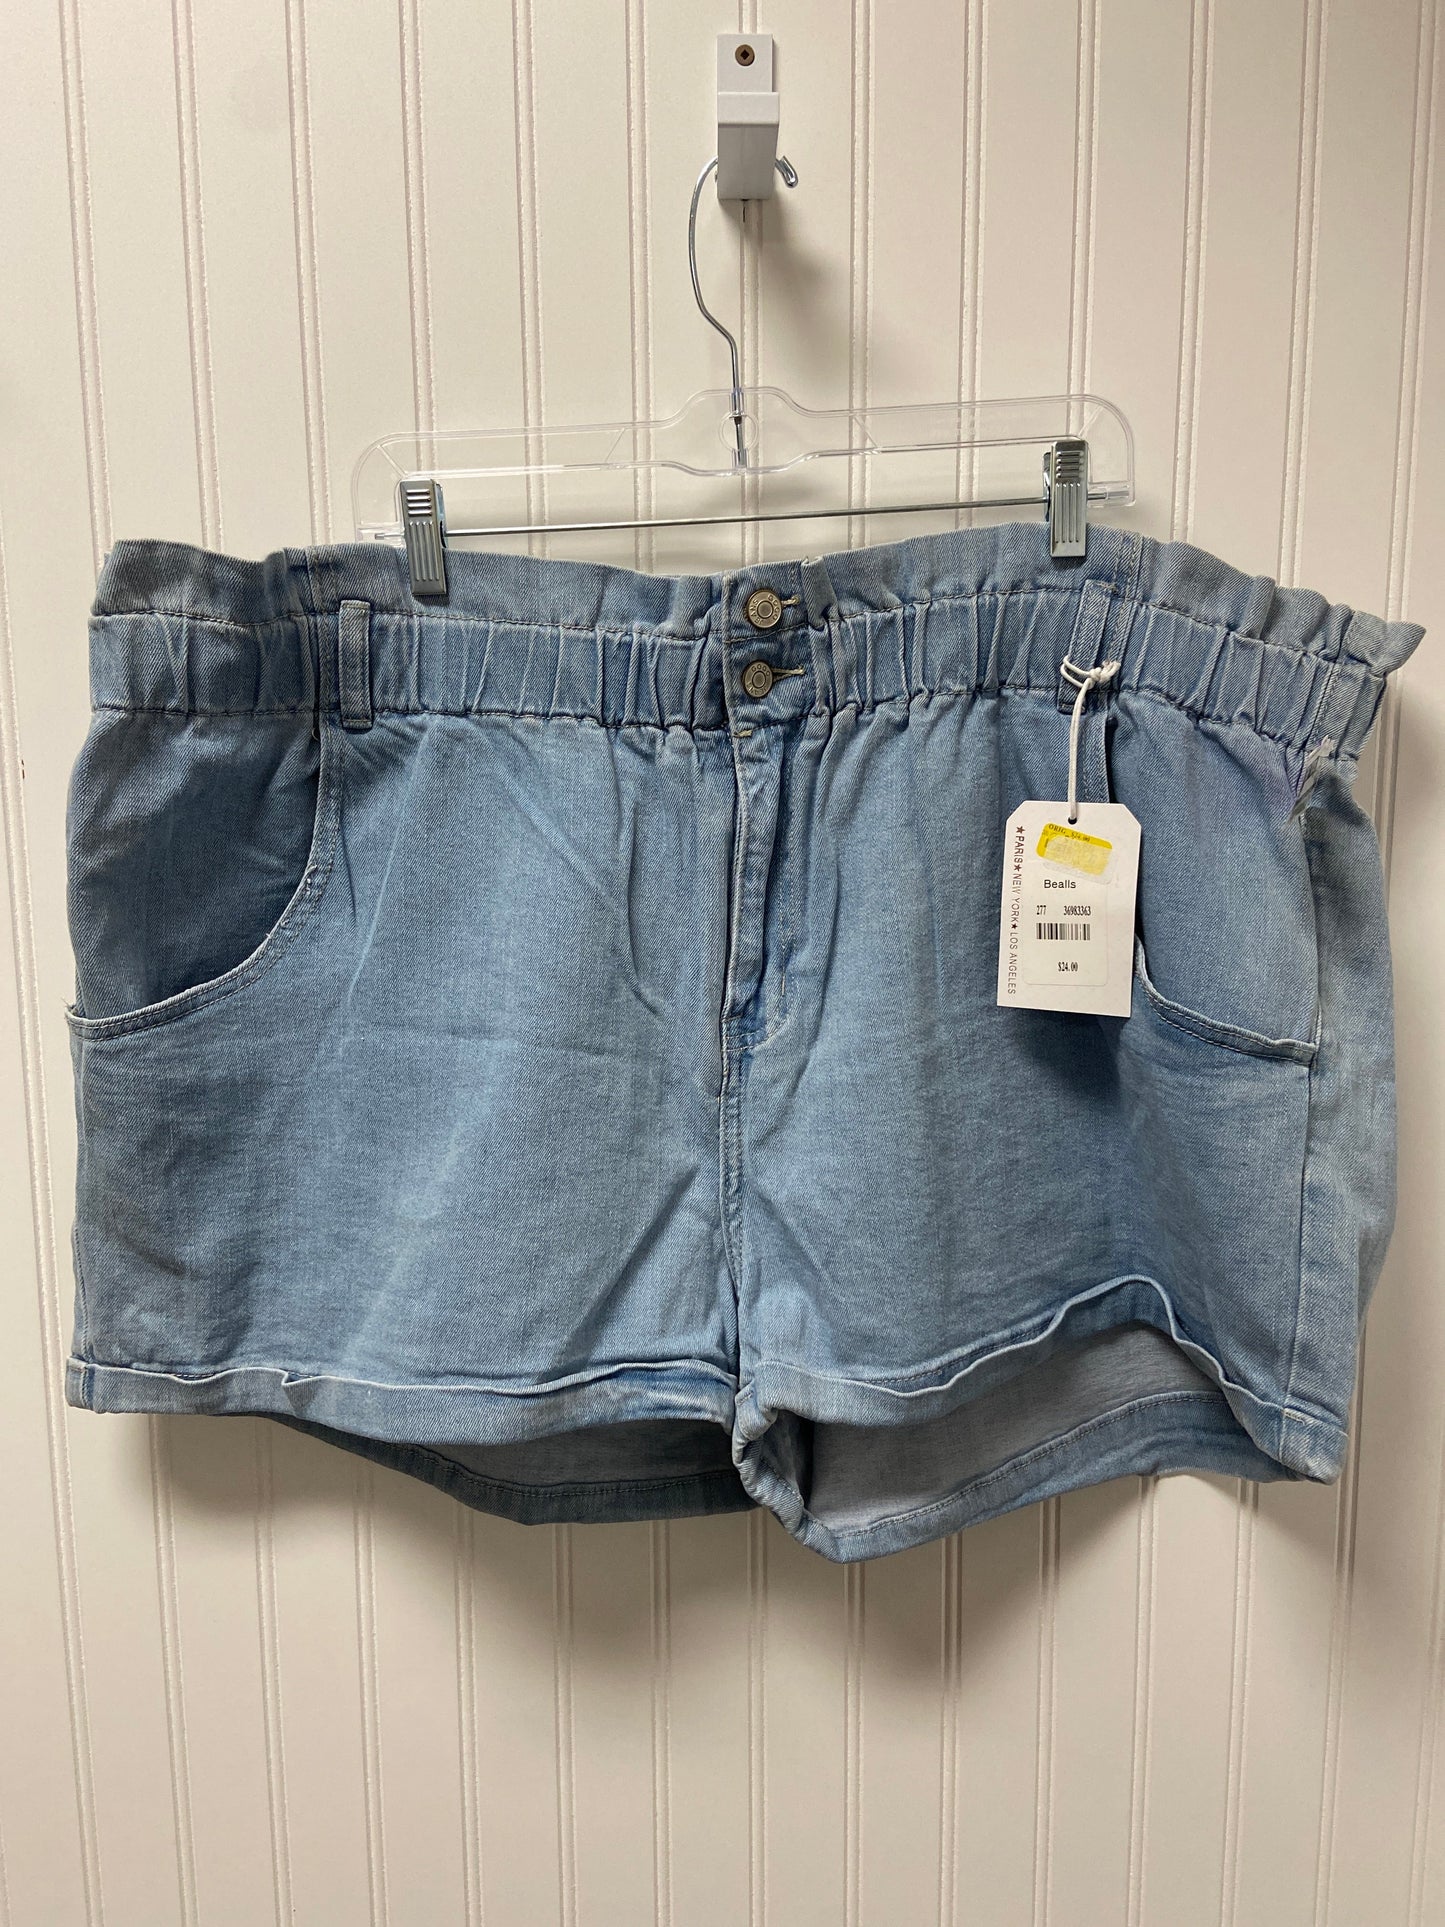 Blue Denim Shorts Clothes Mentor, Size 24